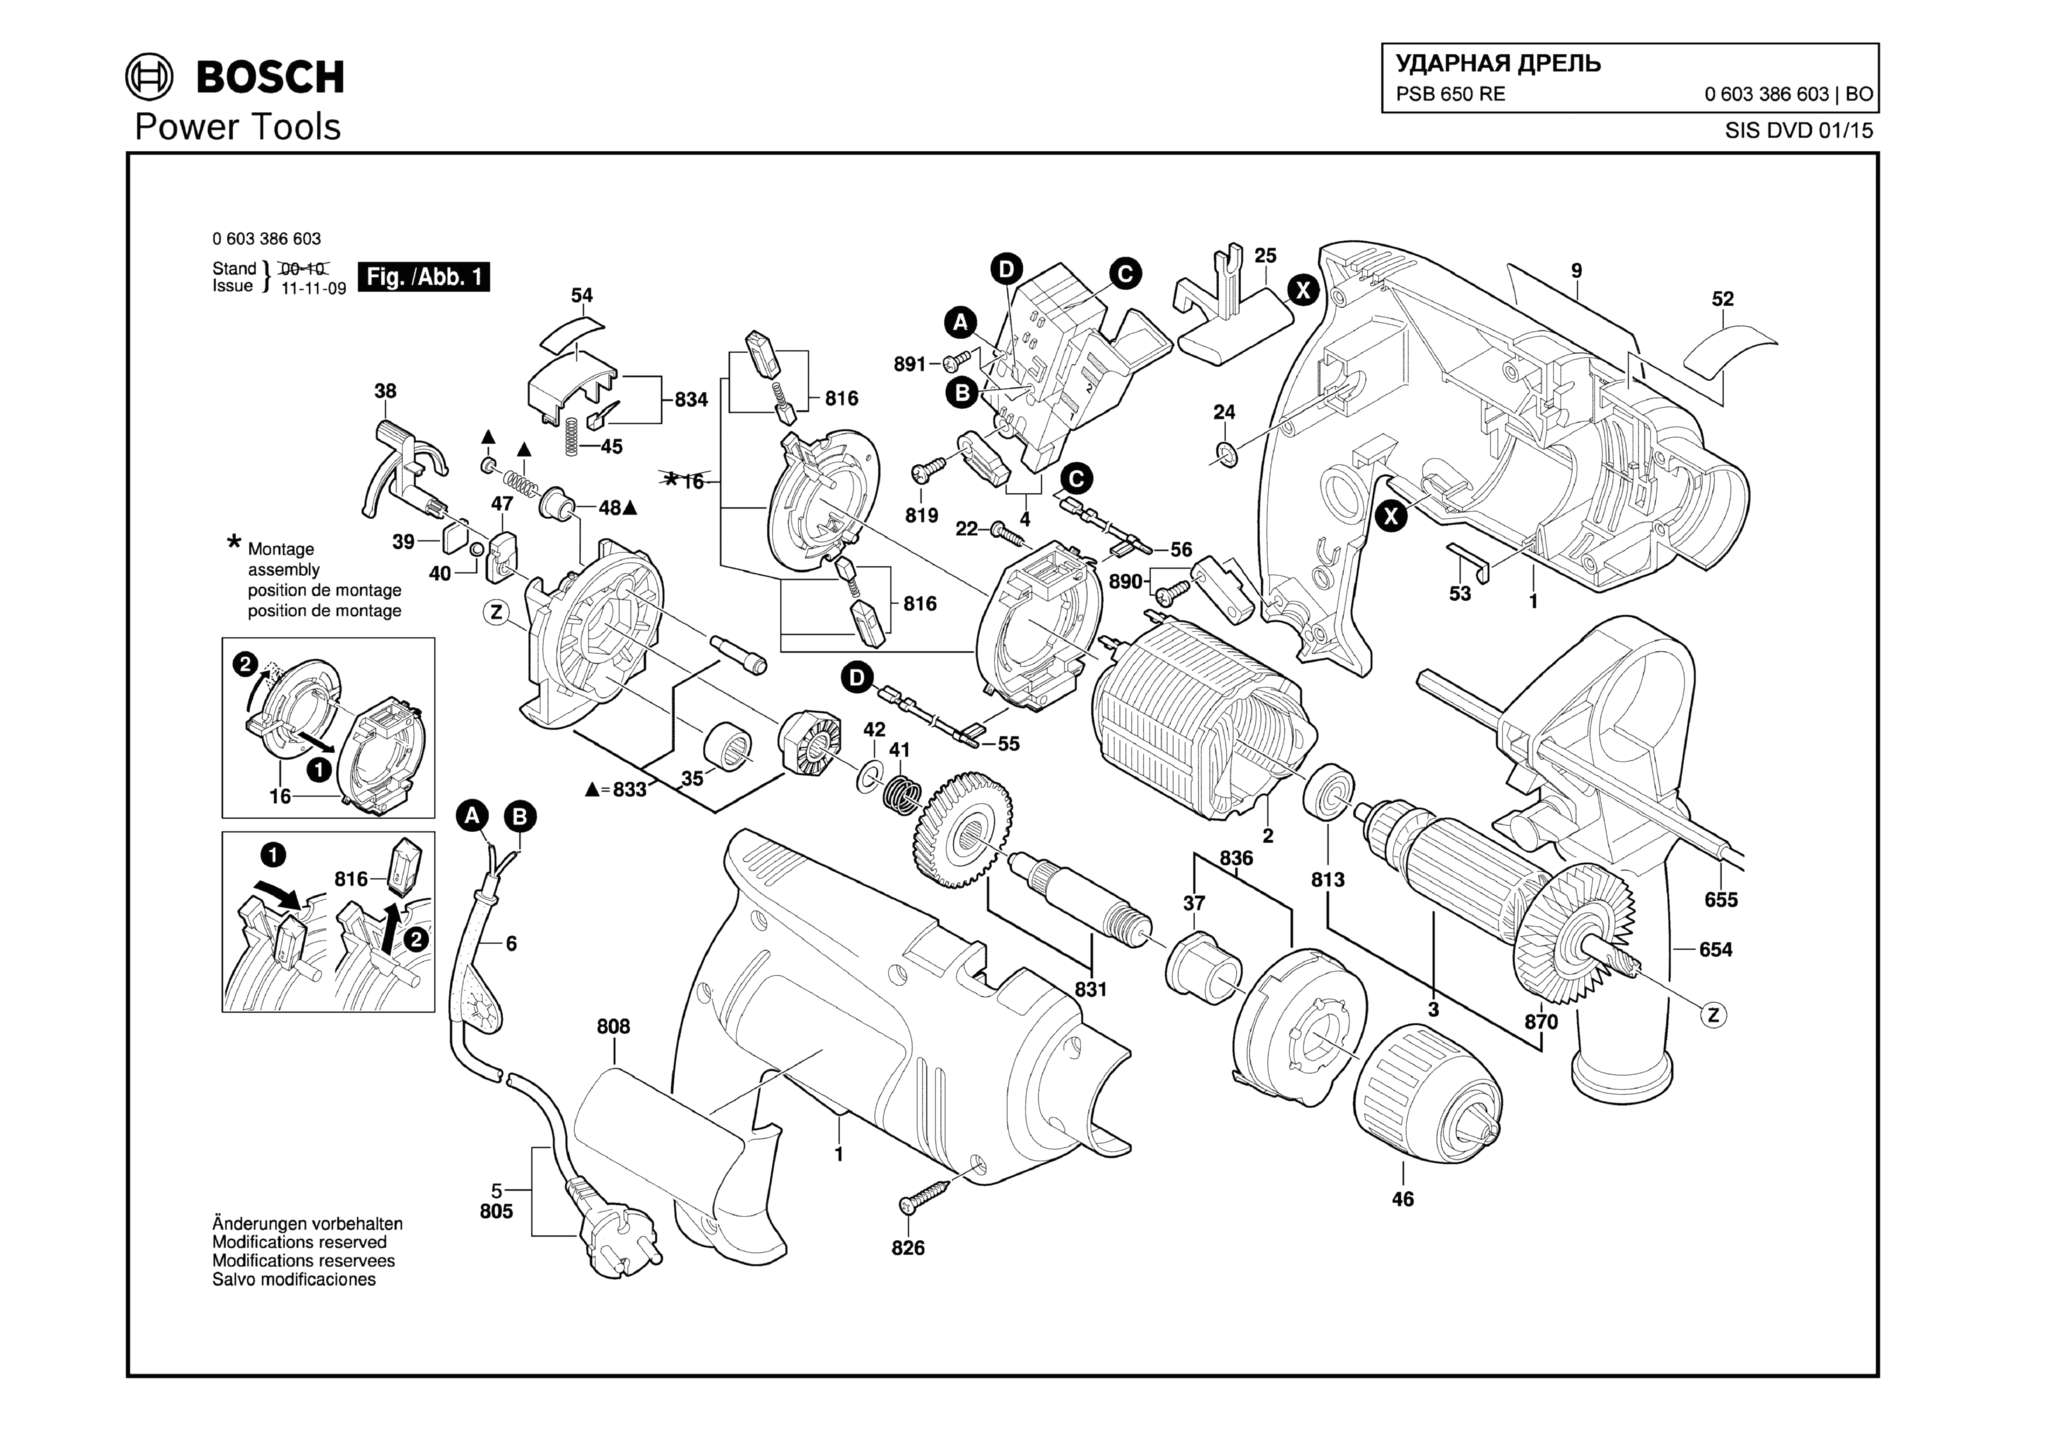 Запчасти, схема и деталировка Bosch PSB 650 RE (ТИП 0603386603)